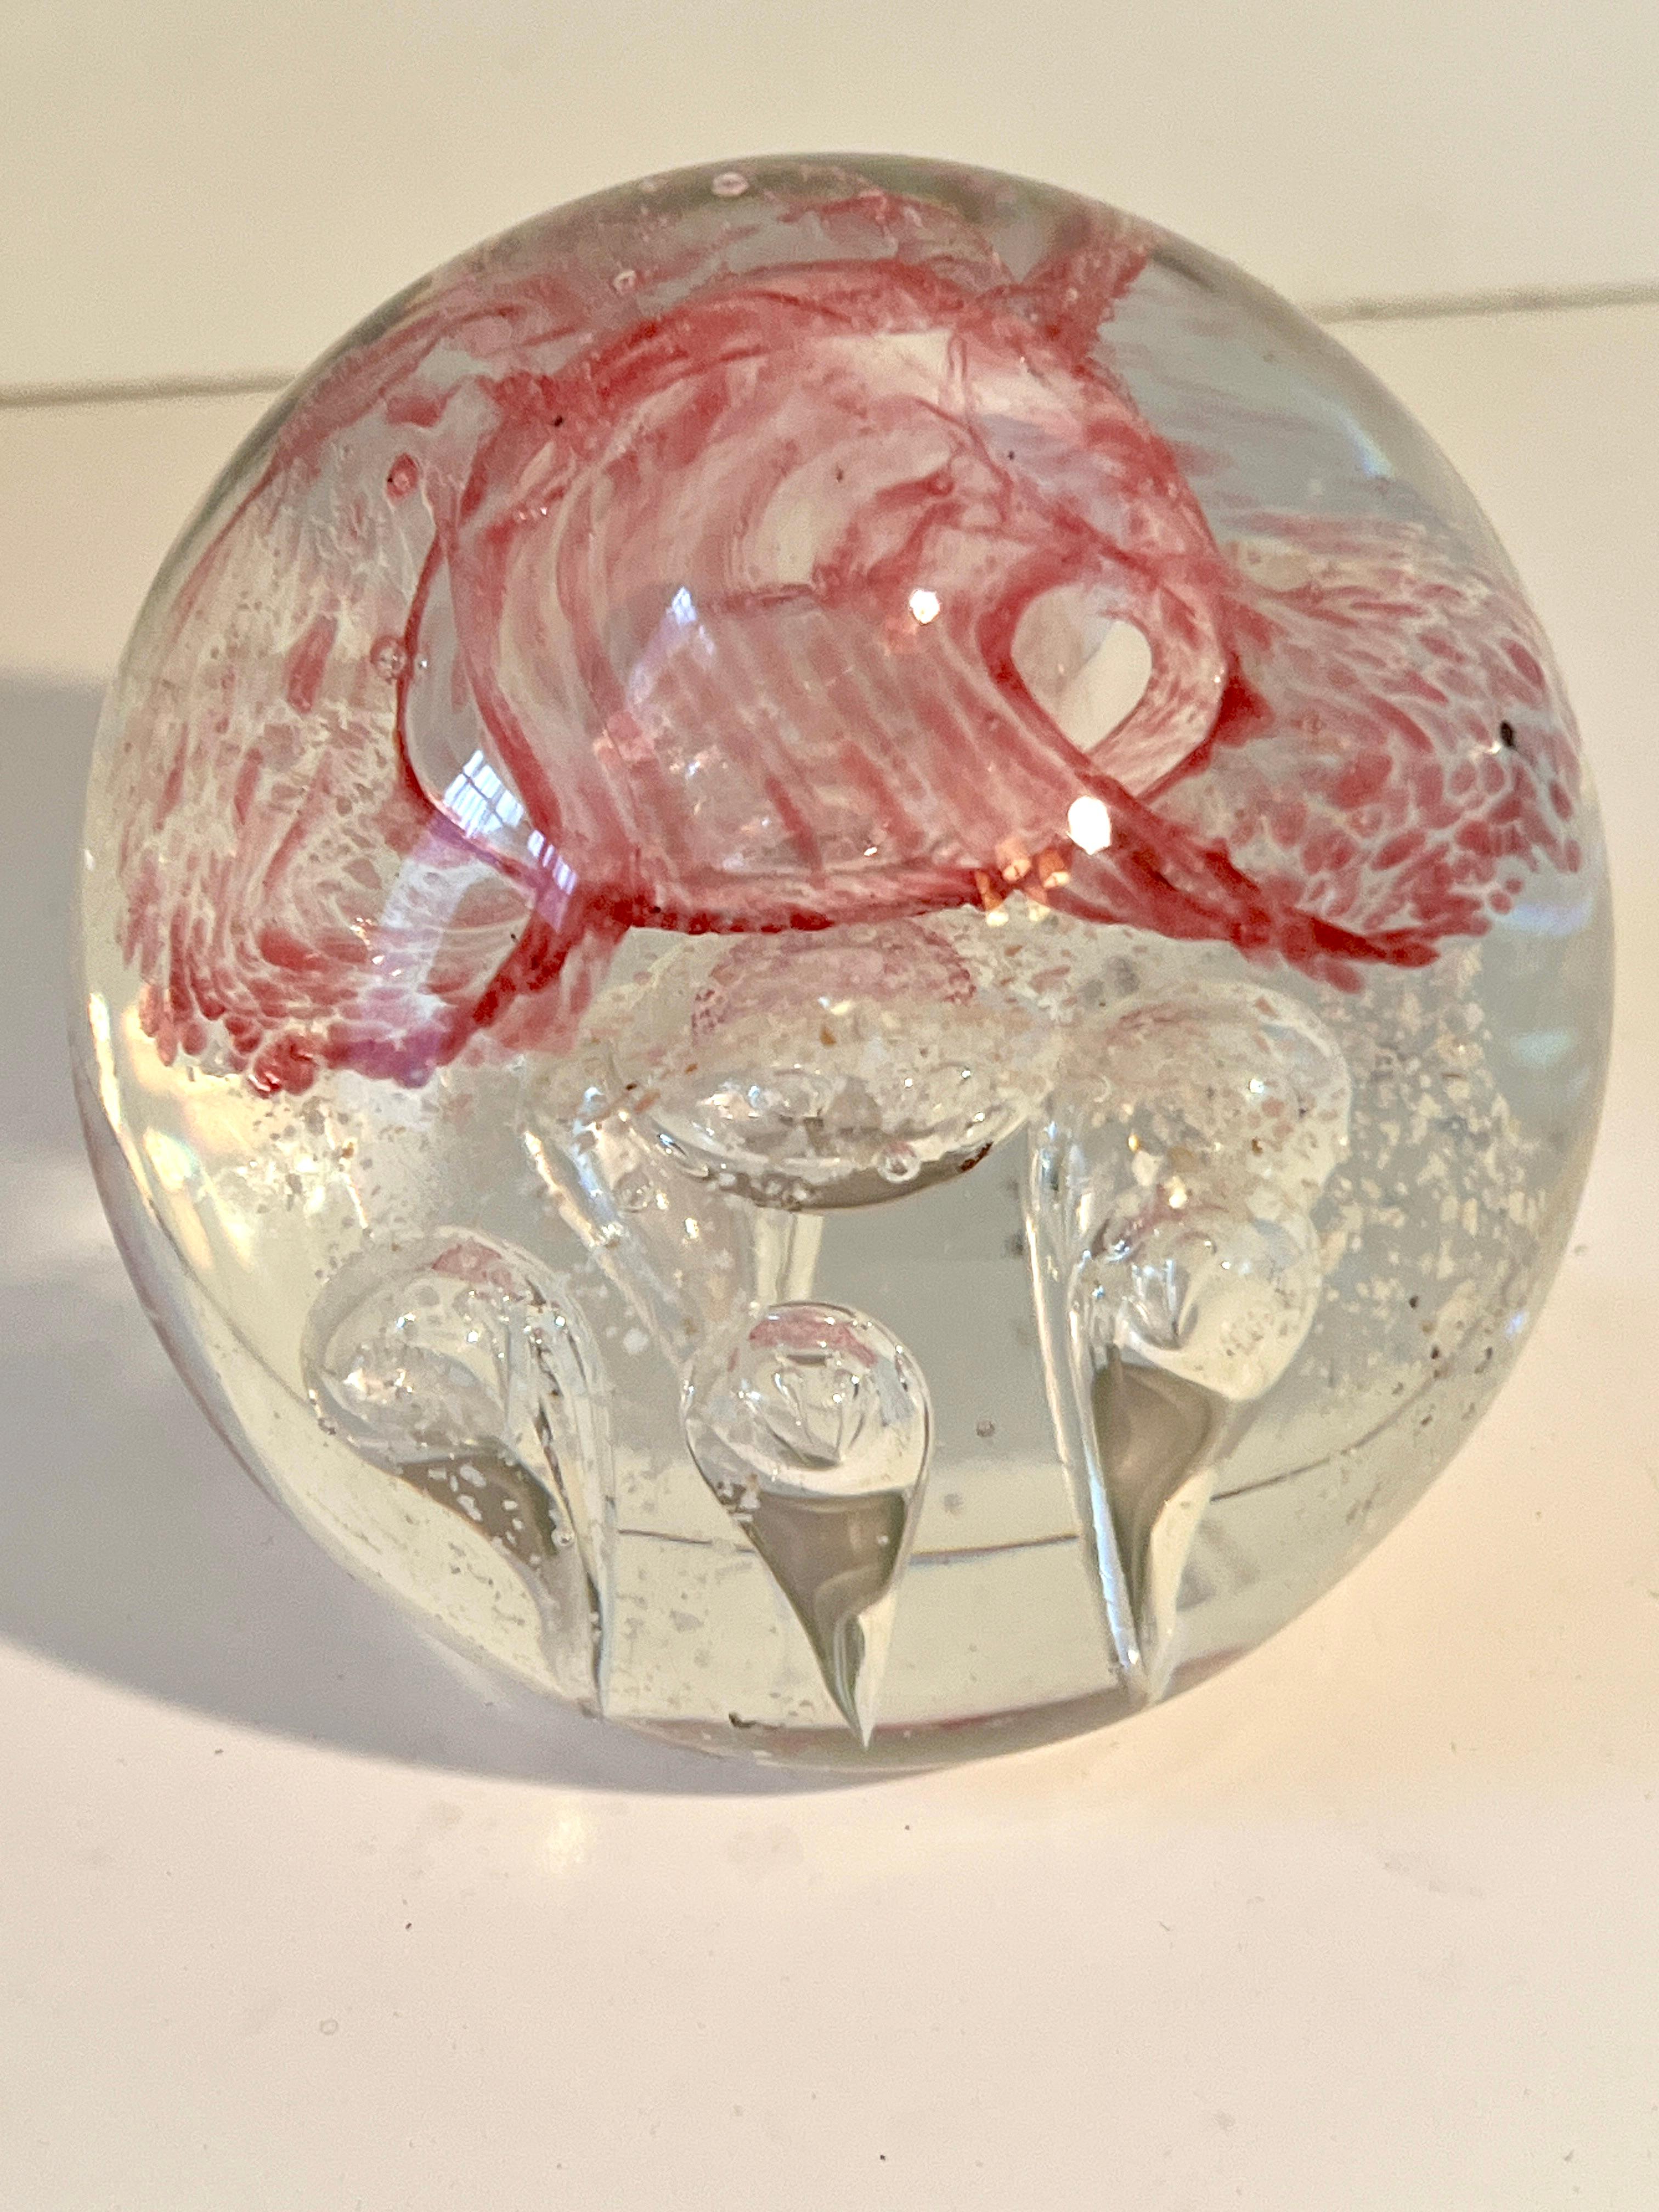 Eine schöne große Glas Briefbeschwerer mit großen Blasen in ganz, viele symmetrische und eine schöne rote Schleife spiralförmig im Inneren.

Ein Kompliment für jeden Schreibtisch, Arbeitsplatz oder als dekoratives Element auf einem Cocktailtisch. 